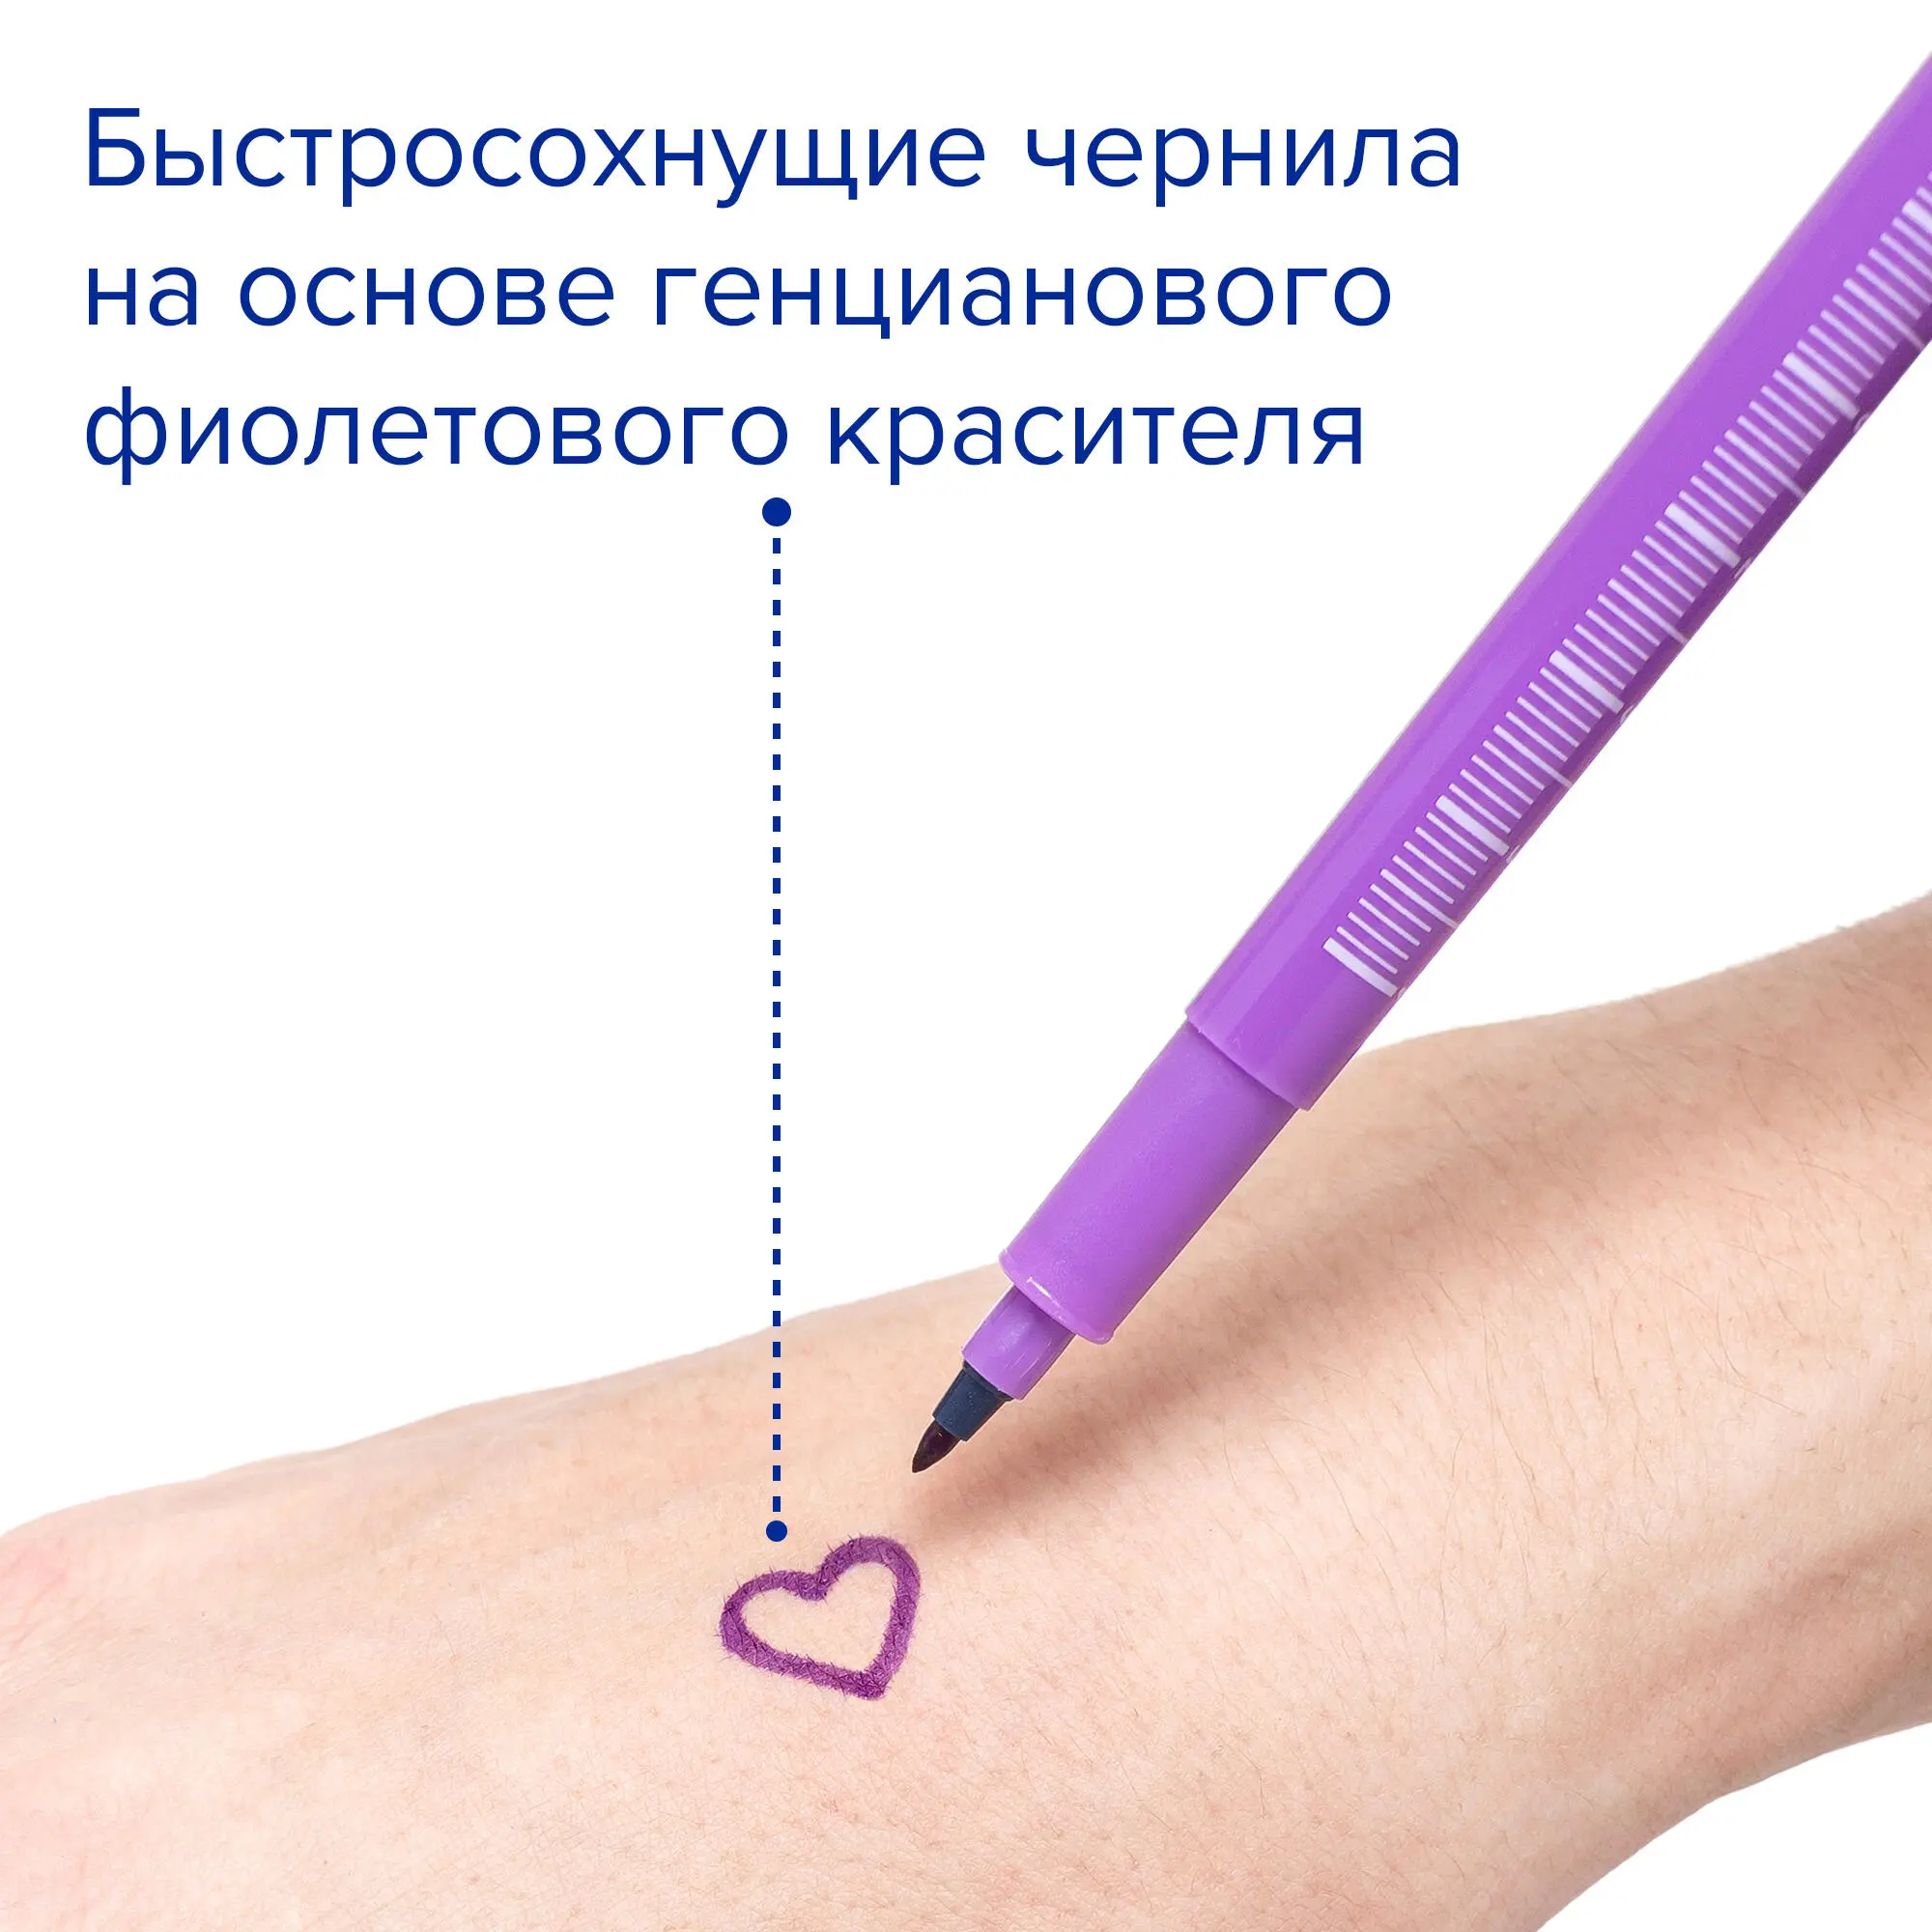 Медицинский маркер для кожи с тонким и стандартным стержнем, 2 шт, Apexmed